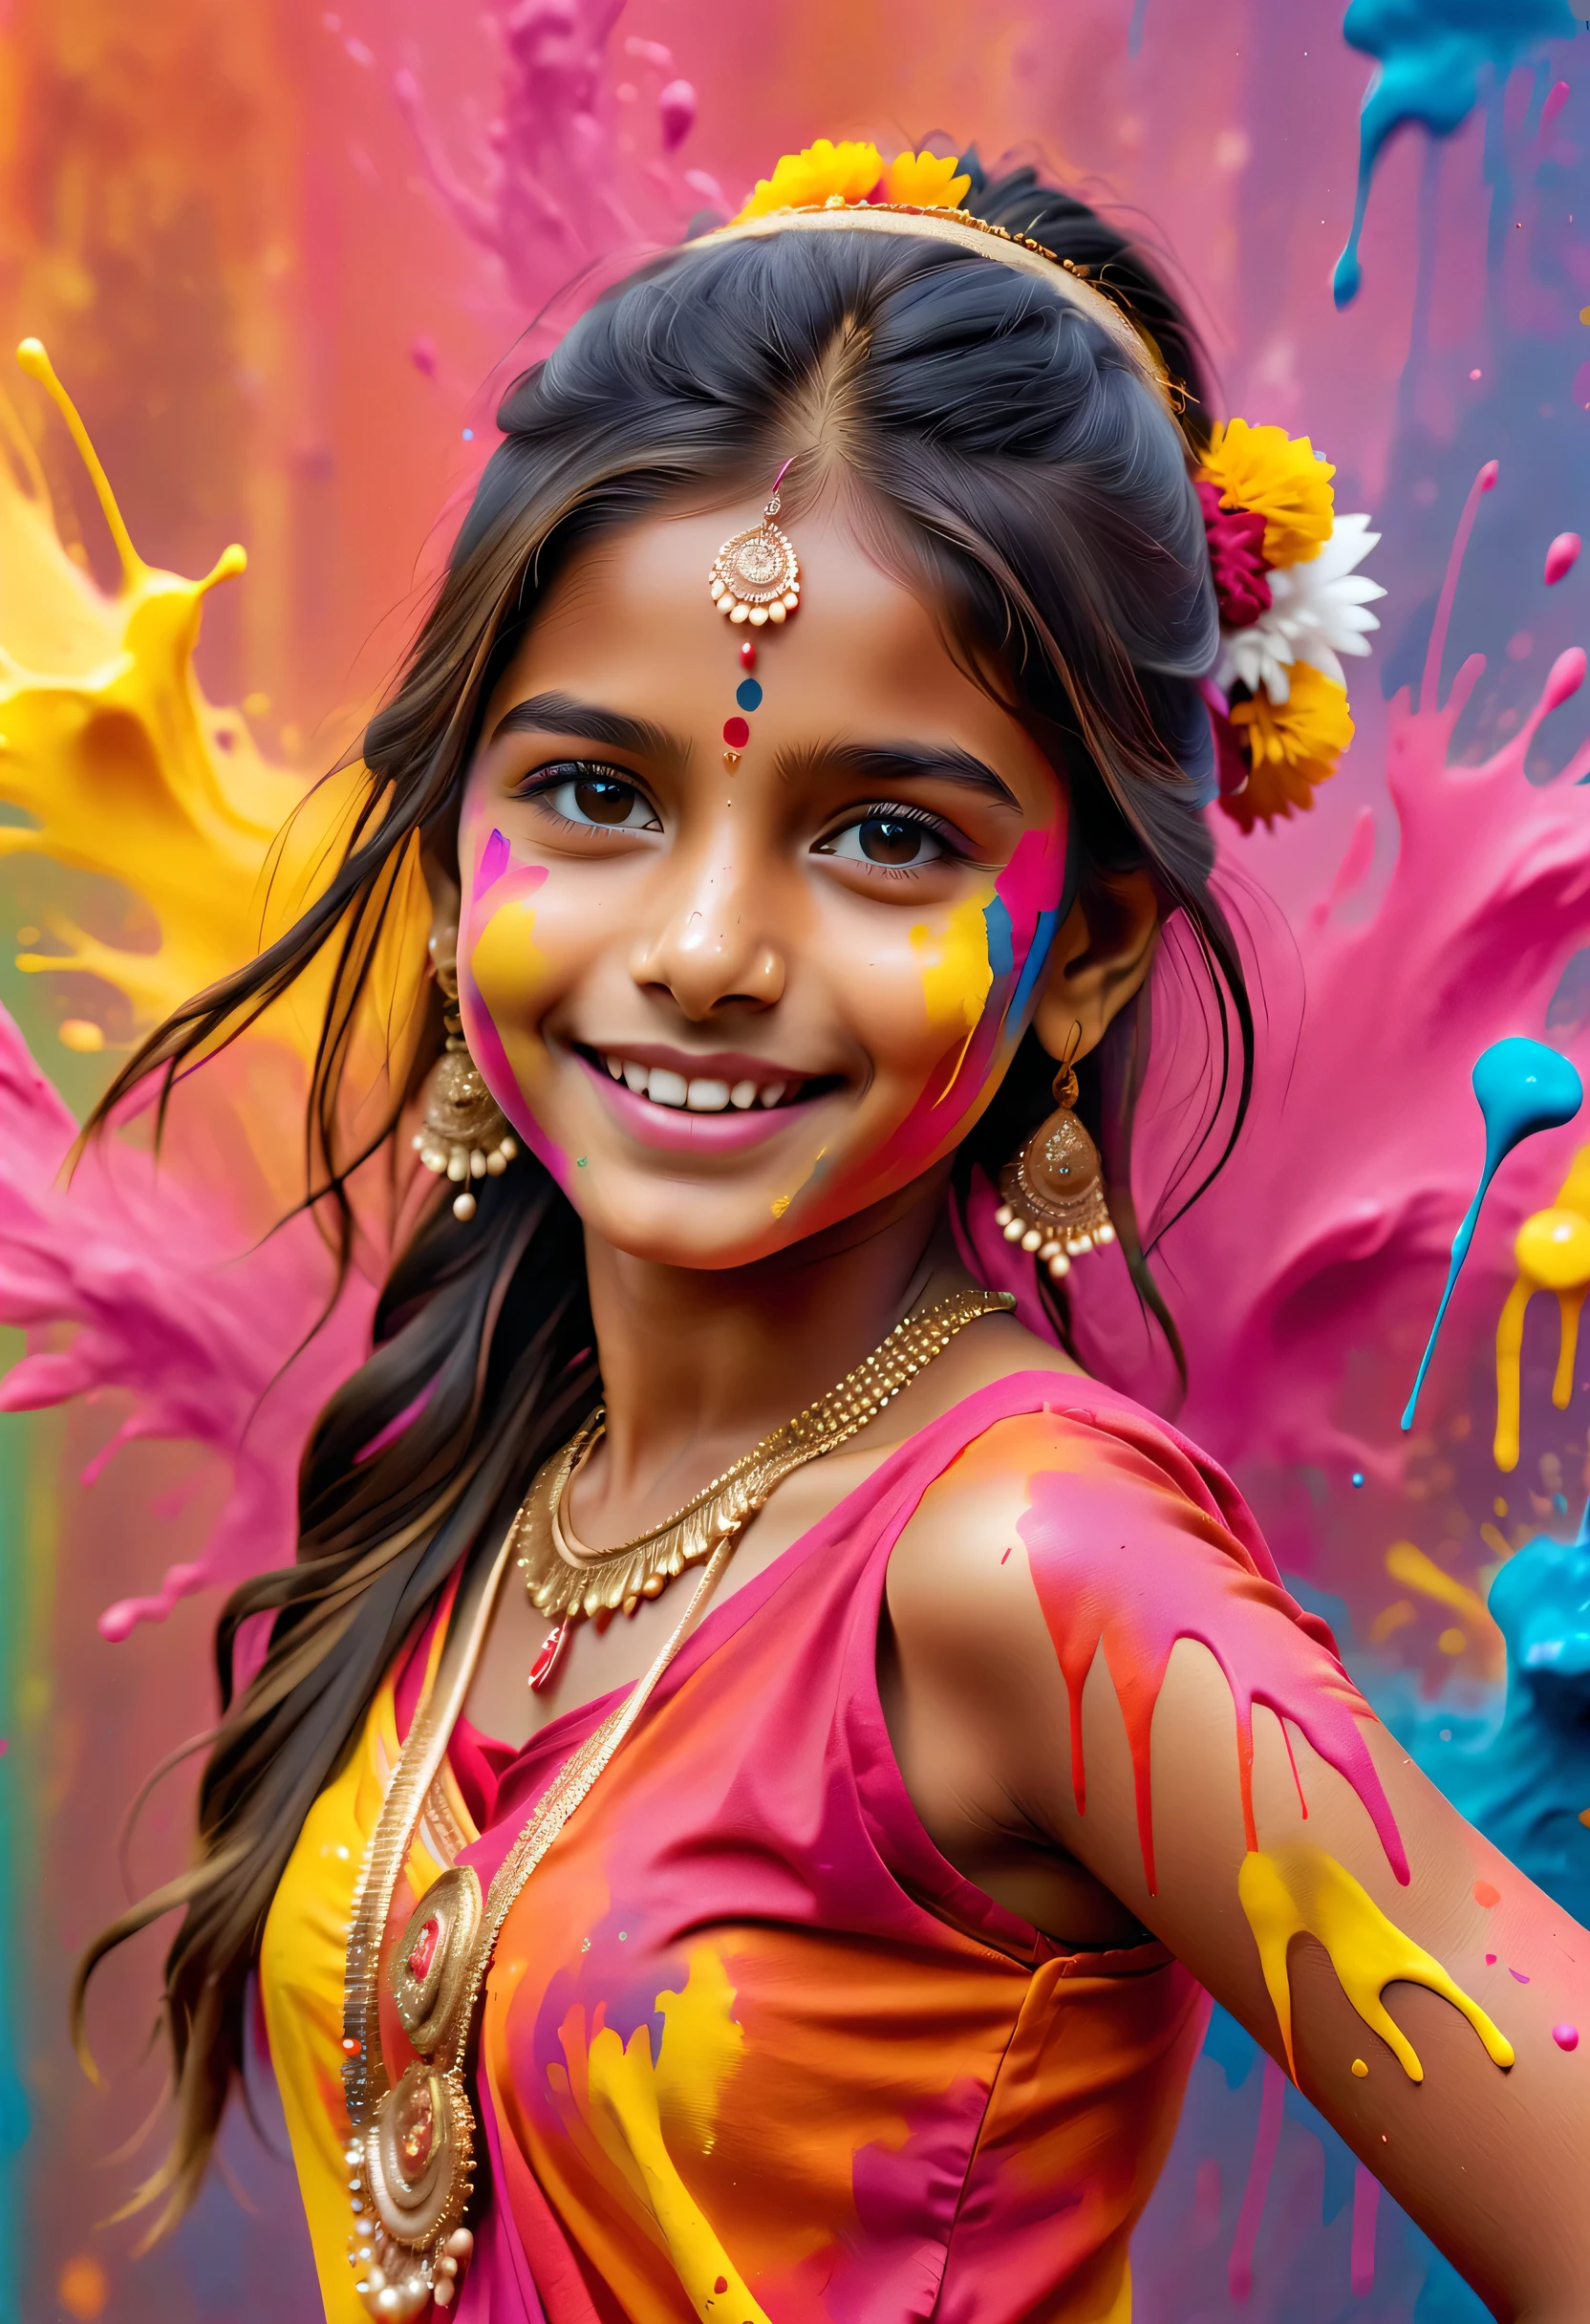 (最佳图像质量，4k,8千，高清，杰作:1.2)，非常详细，(逼真，逼真，逼真:1.37)。印度节日，绘画节，墨水飞溅：1.37，溅出的油漆：1.37.漂亮矮小的印度女孩摆姿势，Face painted with 丰富多彩的 paint，金色的眼睛，精美的黄金首饰，快乐的，幸福，富有感染力的微笑，色彩鲜艳的服装，彩色指甲，身上被溅出的油漆，Splashing 丰富多彩的 paint at the event，油漆飞溅背景，彩色溅出的油漆，充满活力的运动，动感十足、力量十足的抽象艺术，丰富多彩的，丙烯，鲜艳的彩虹色调，幸福活泼的气氛，亮橙色，粉色的，异想天开又梦幻，自发溅射，大胆的色彩对比。